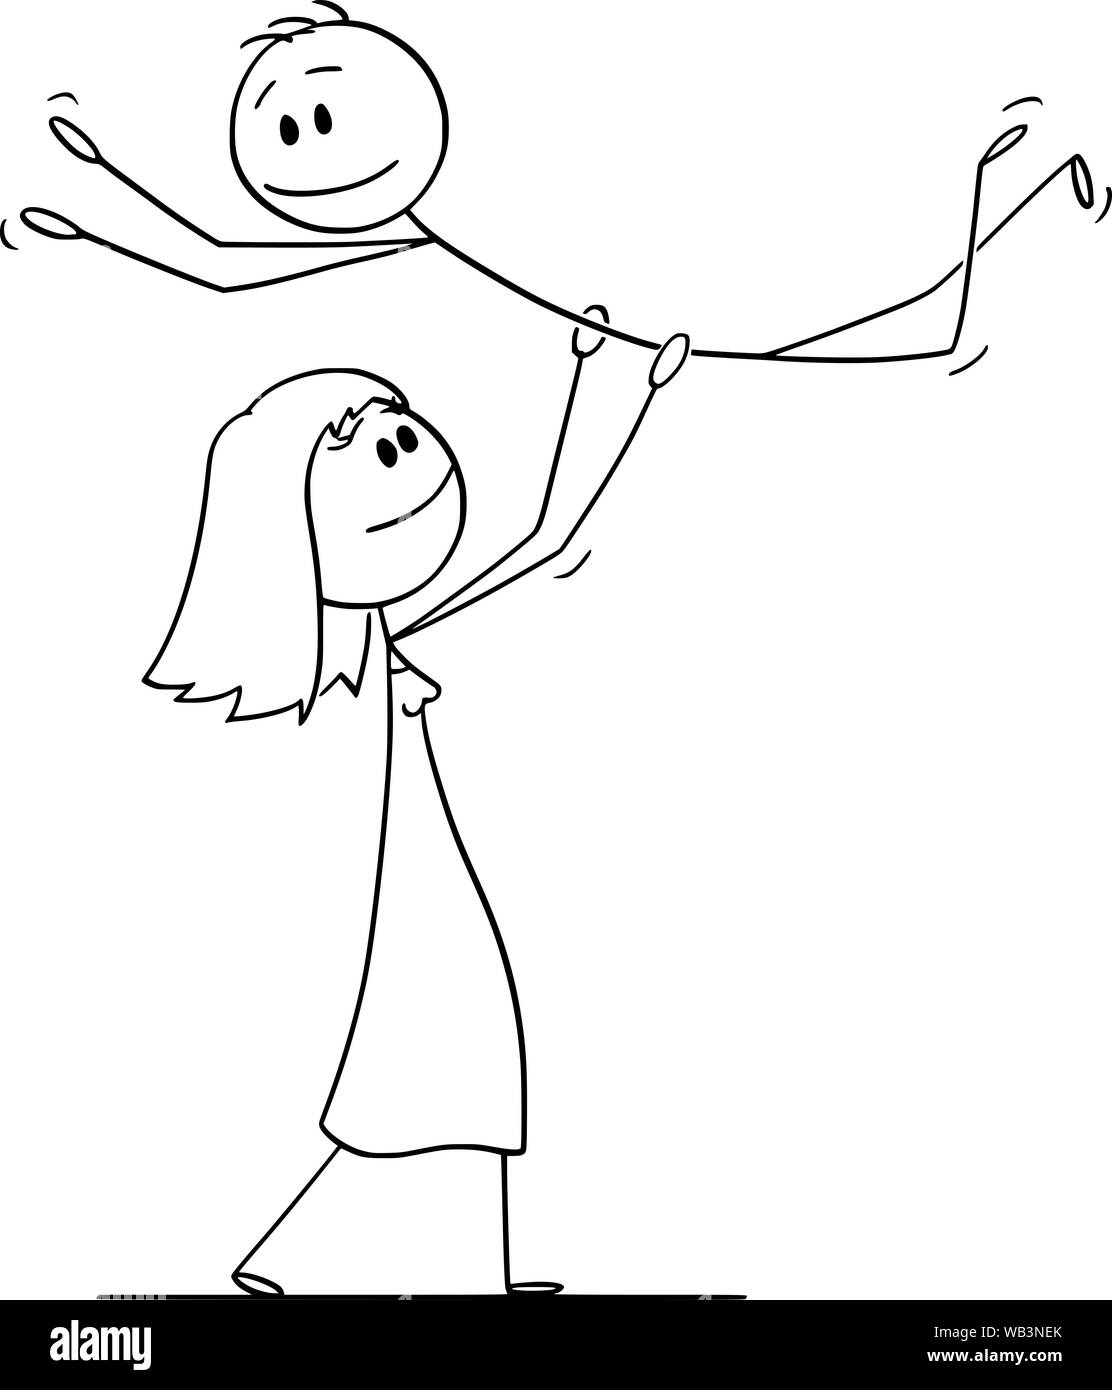 Vector cartoon stick figure dessin illustration conceptuelle du couple hétérosexuel de woman lifting homme tout en effectuant la danse posent mécaniques pendant la danse. Illustration de Vecteur